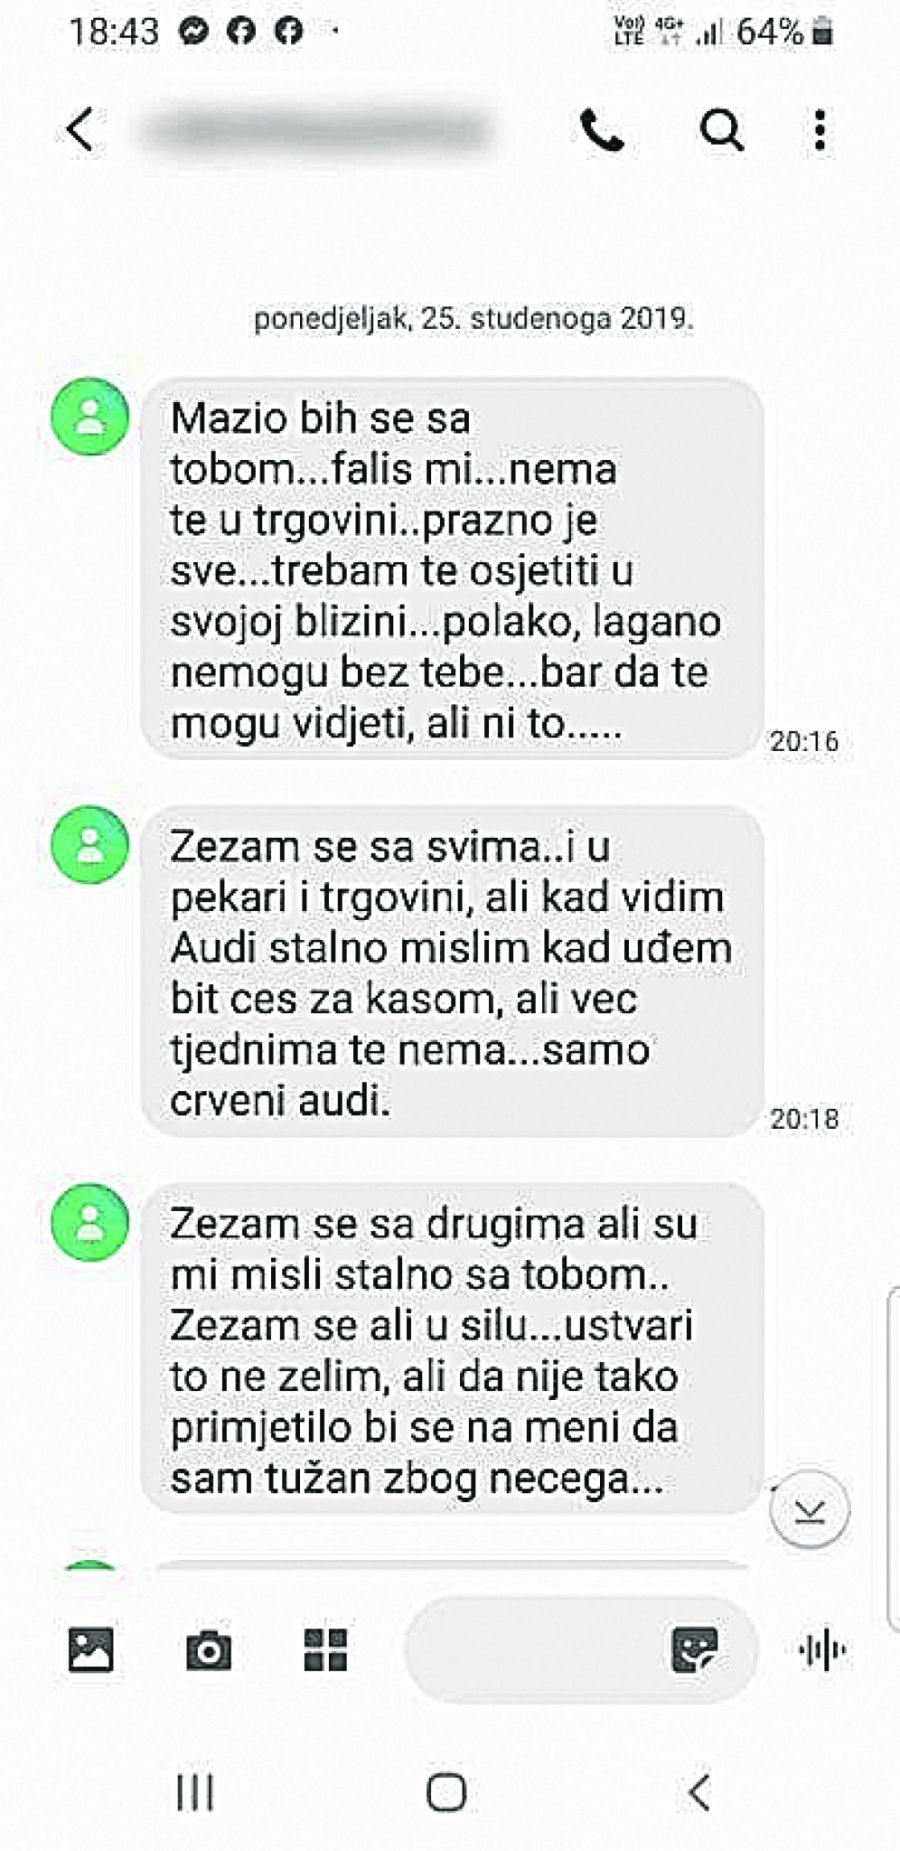 MONSTRUM Hrvatski veteran  proganjao žene i decu: Mazio bih se sa tobom...